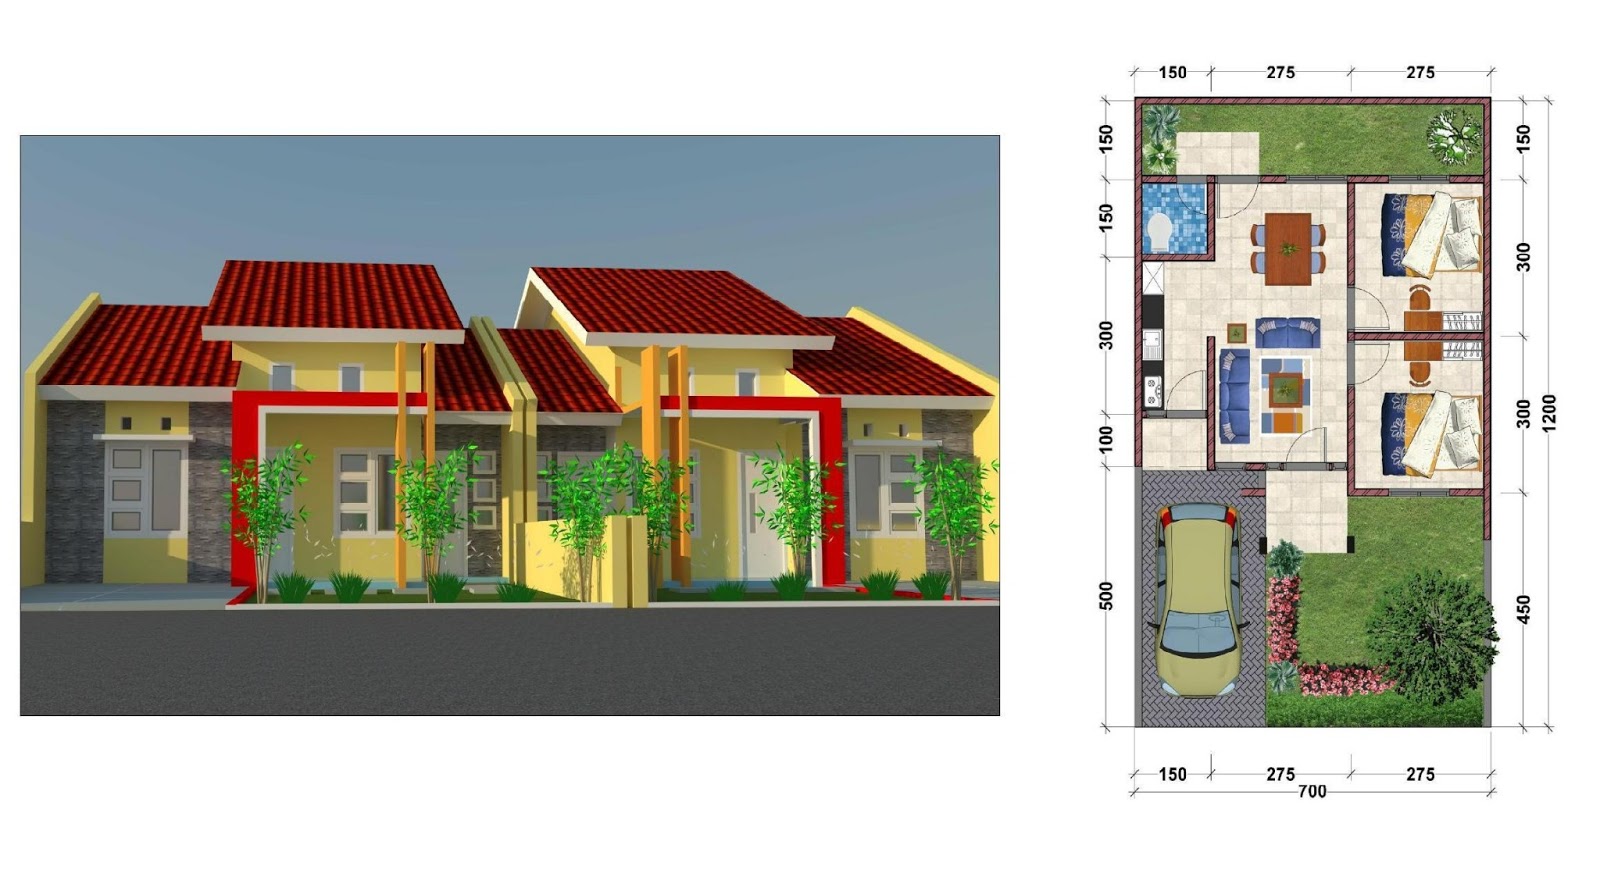 Desain Rumah Tipe 40 Jasa Desain Gambar Rumah Minimalis Online Murah Harga Terjangkau